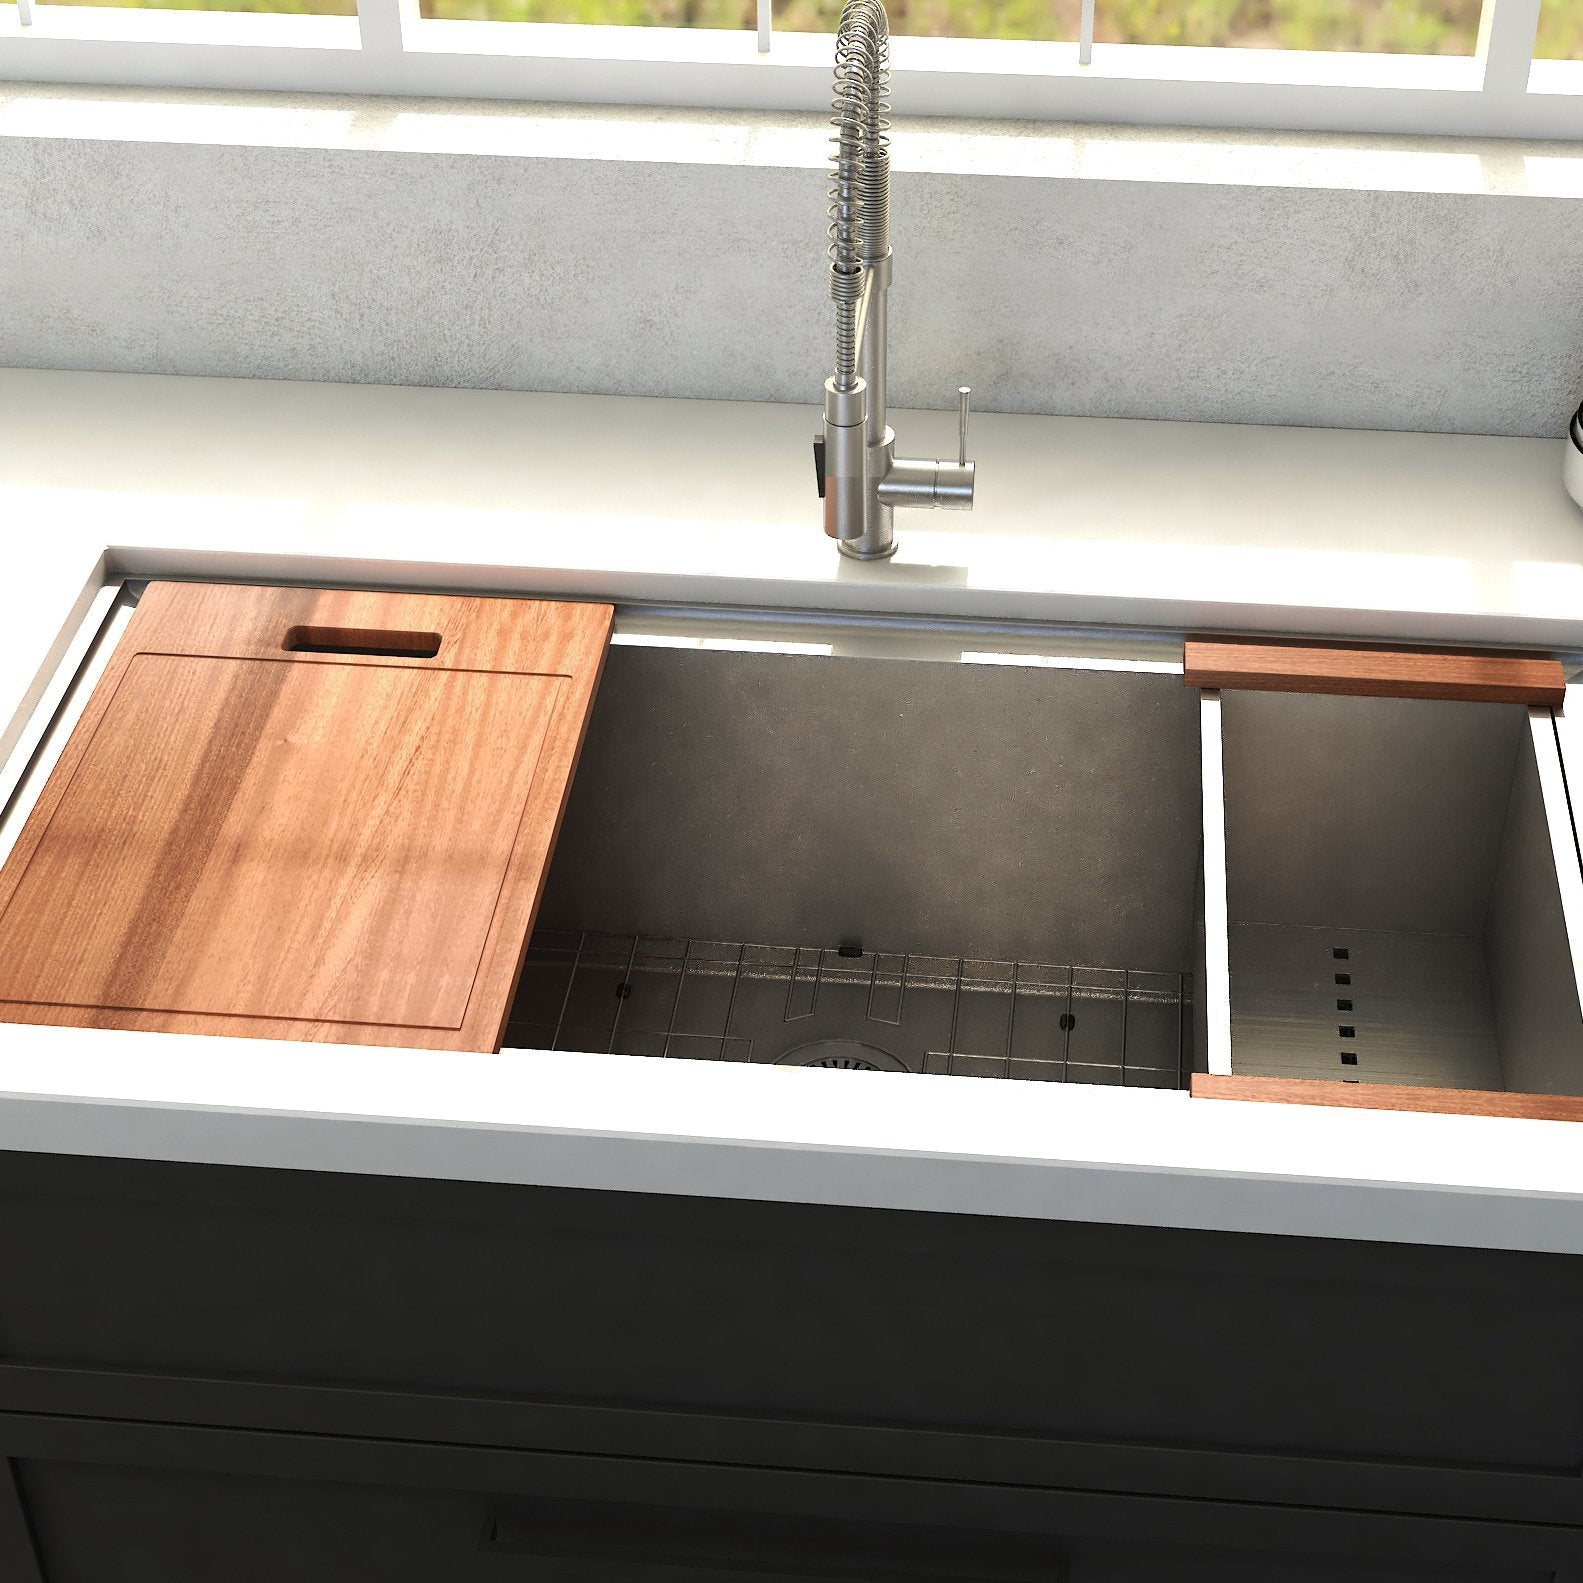 ZLINE 33 in. Garmisch Undermount Single Bowl Kitchen Sink with Bottom Grid and Accessories (SLS-33) installed in modern kitchen